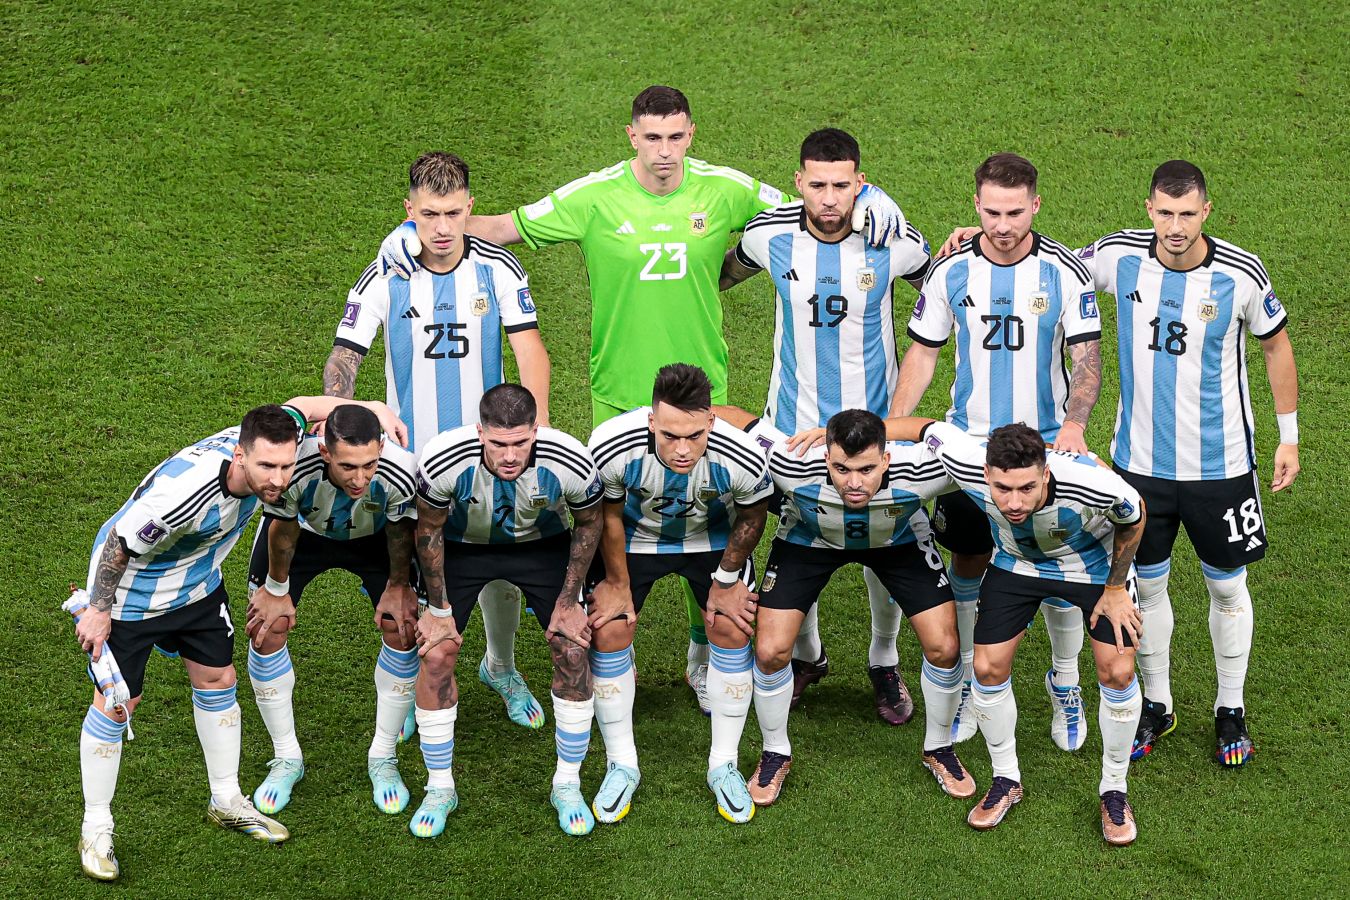 игроки сборной аргентины по футболу